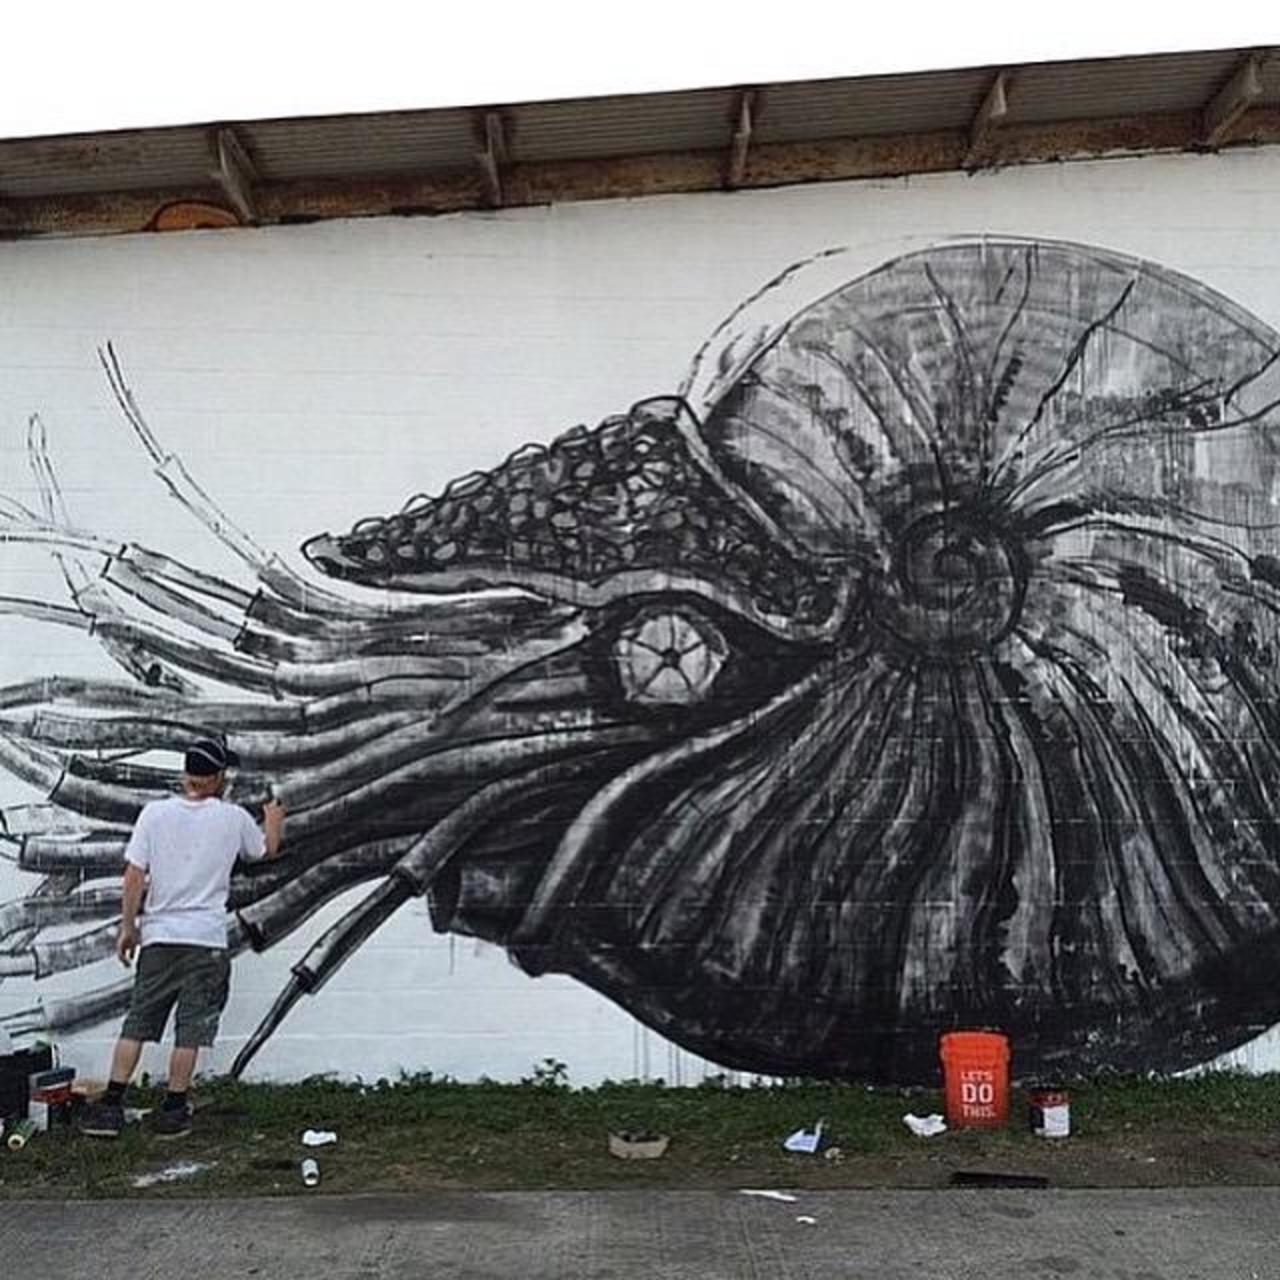 Let @POWWOWHAWAII begin! Master #Roa at work on his #mural #powwowhawaii #Graffiti #streetart #urbanart http://t.co/lOQTeZAJws